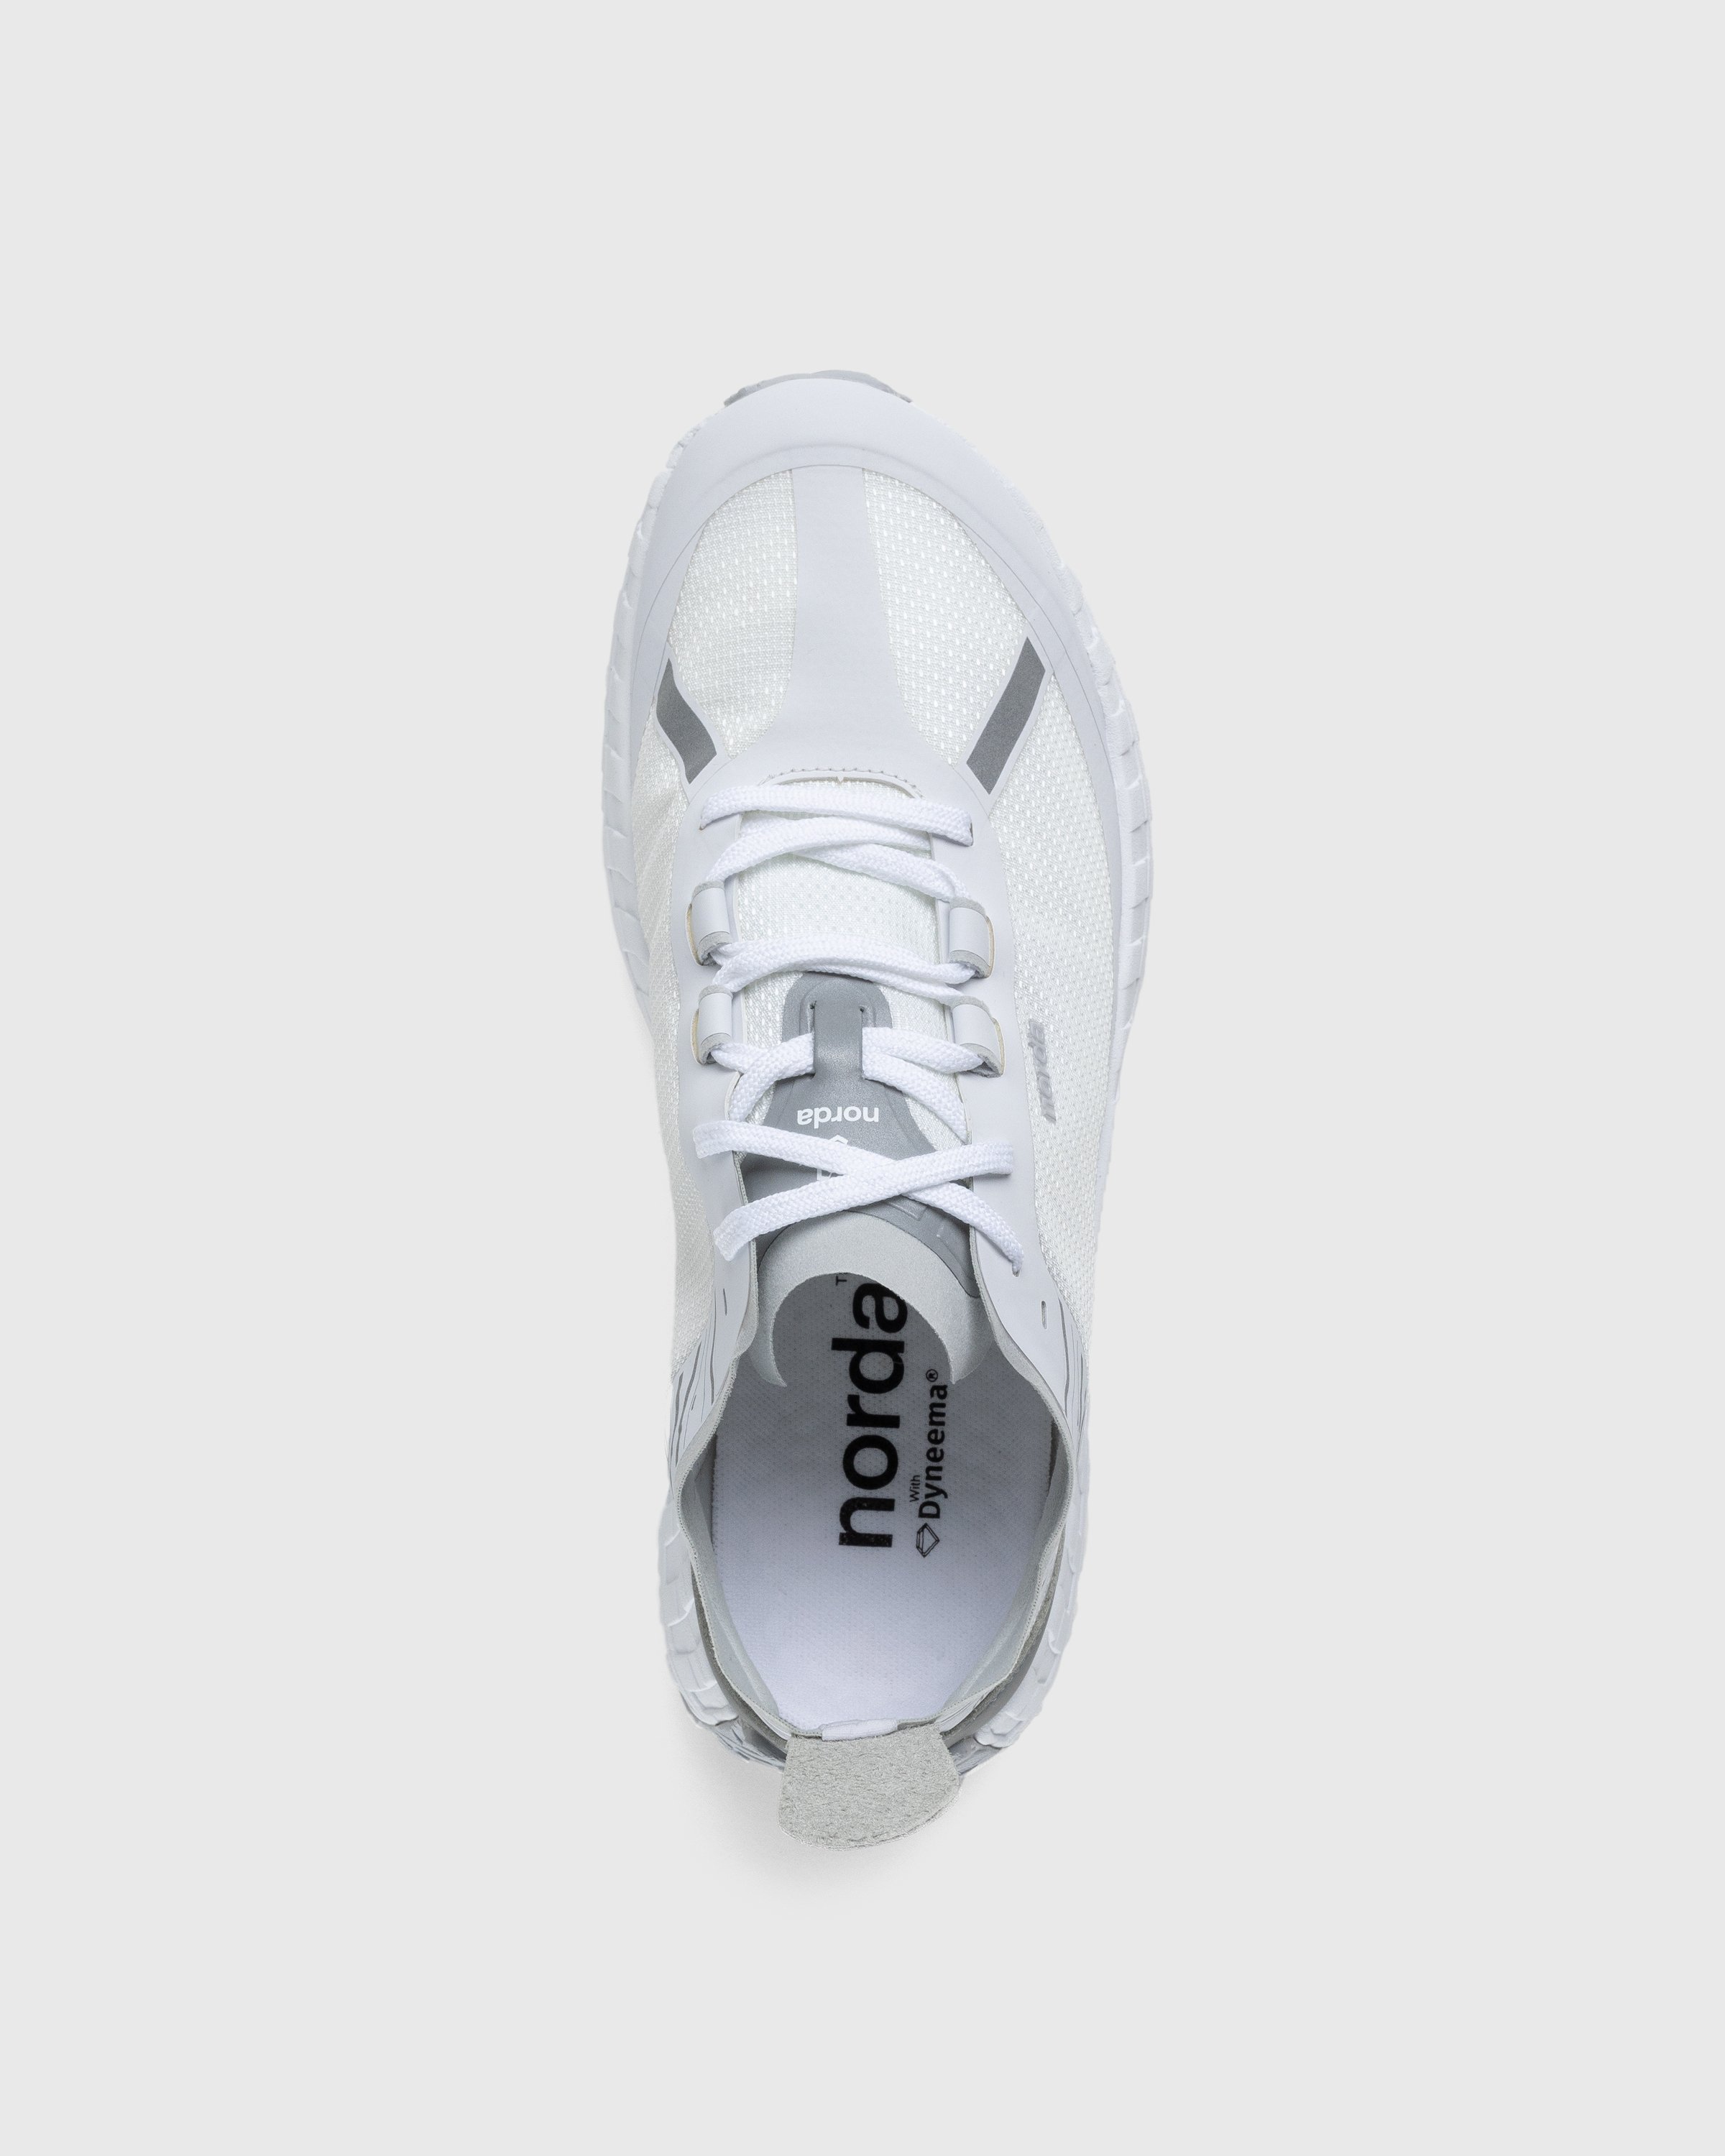 Norda - 001 W White/Grey - Footwear - White - Image 5